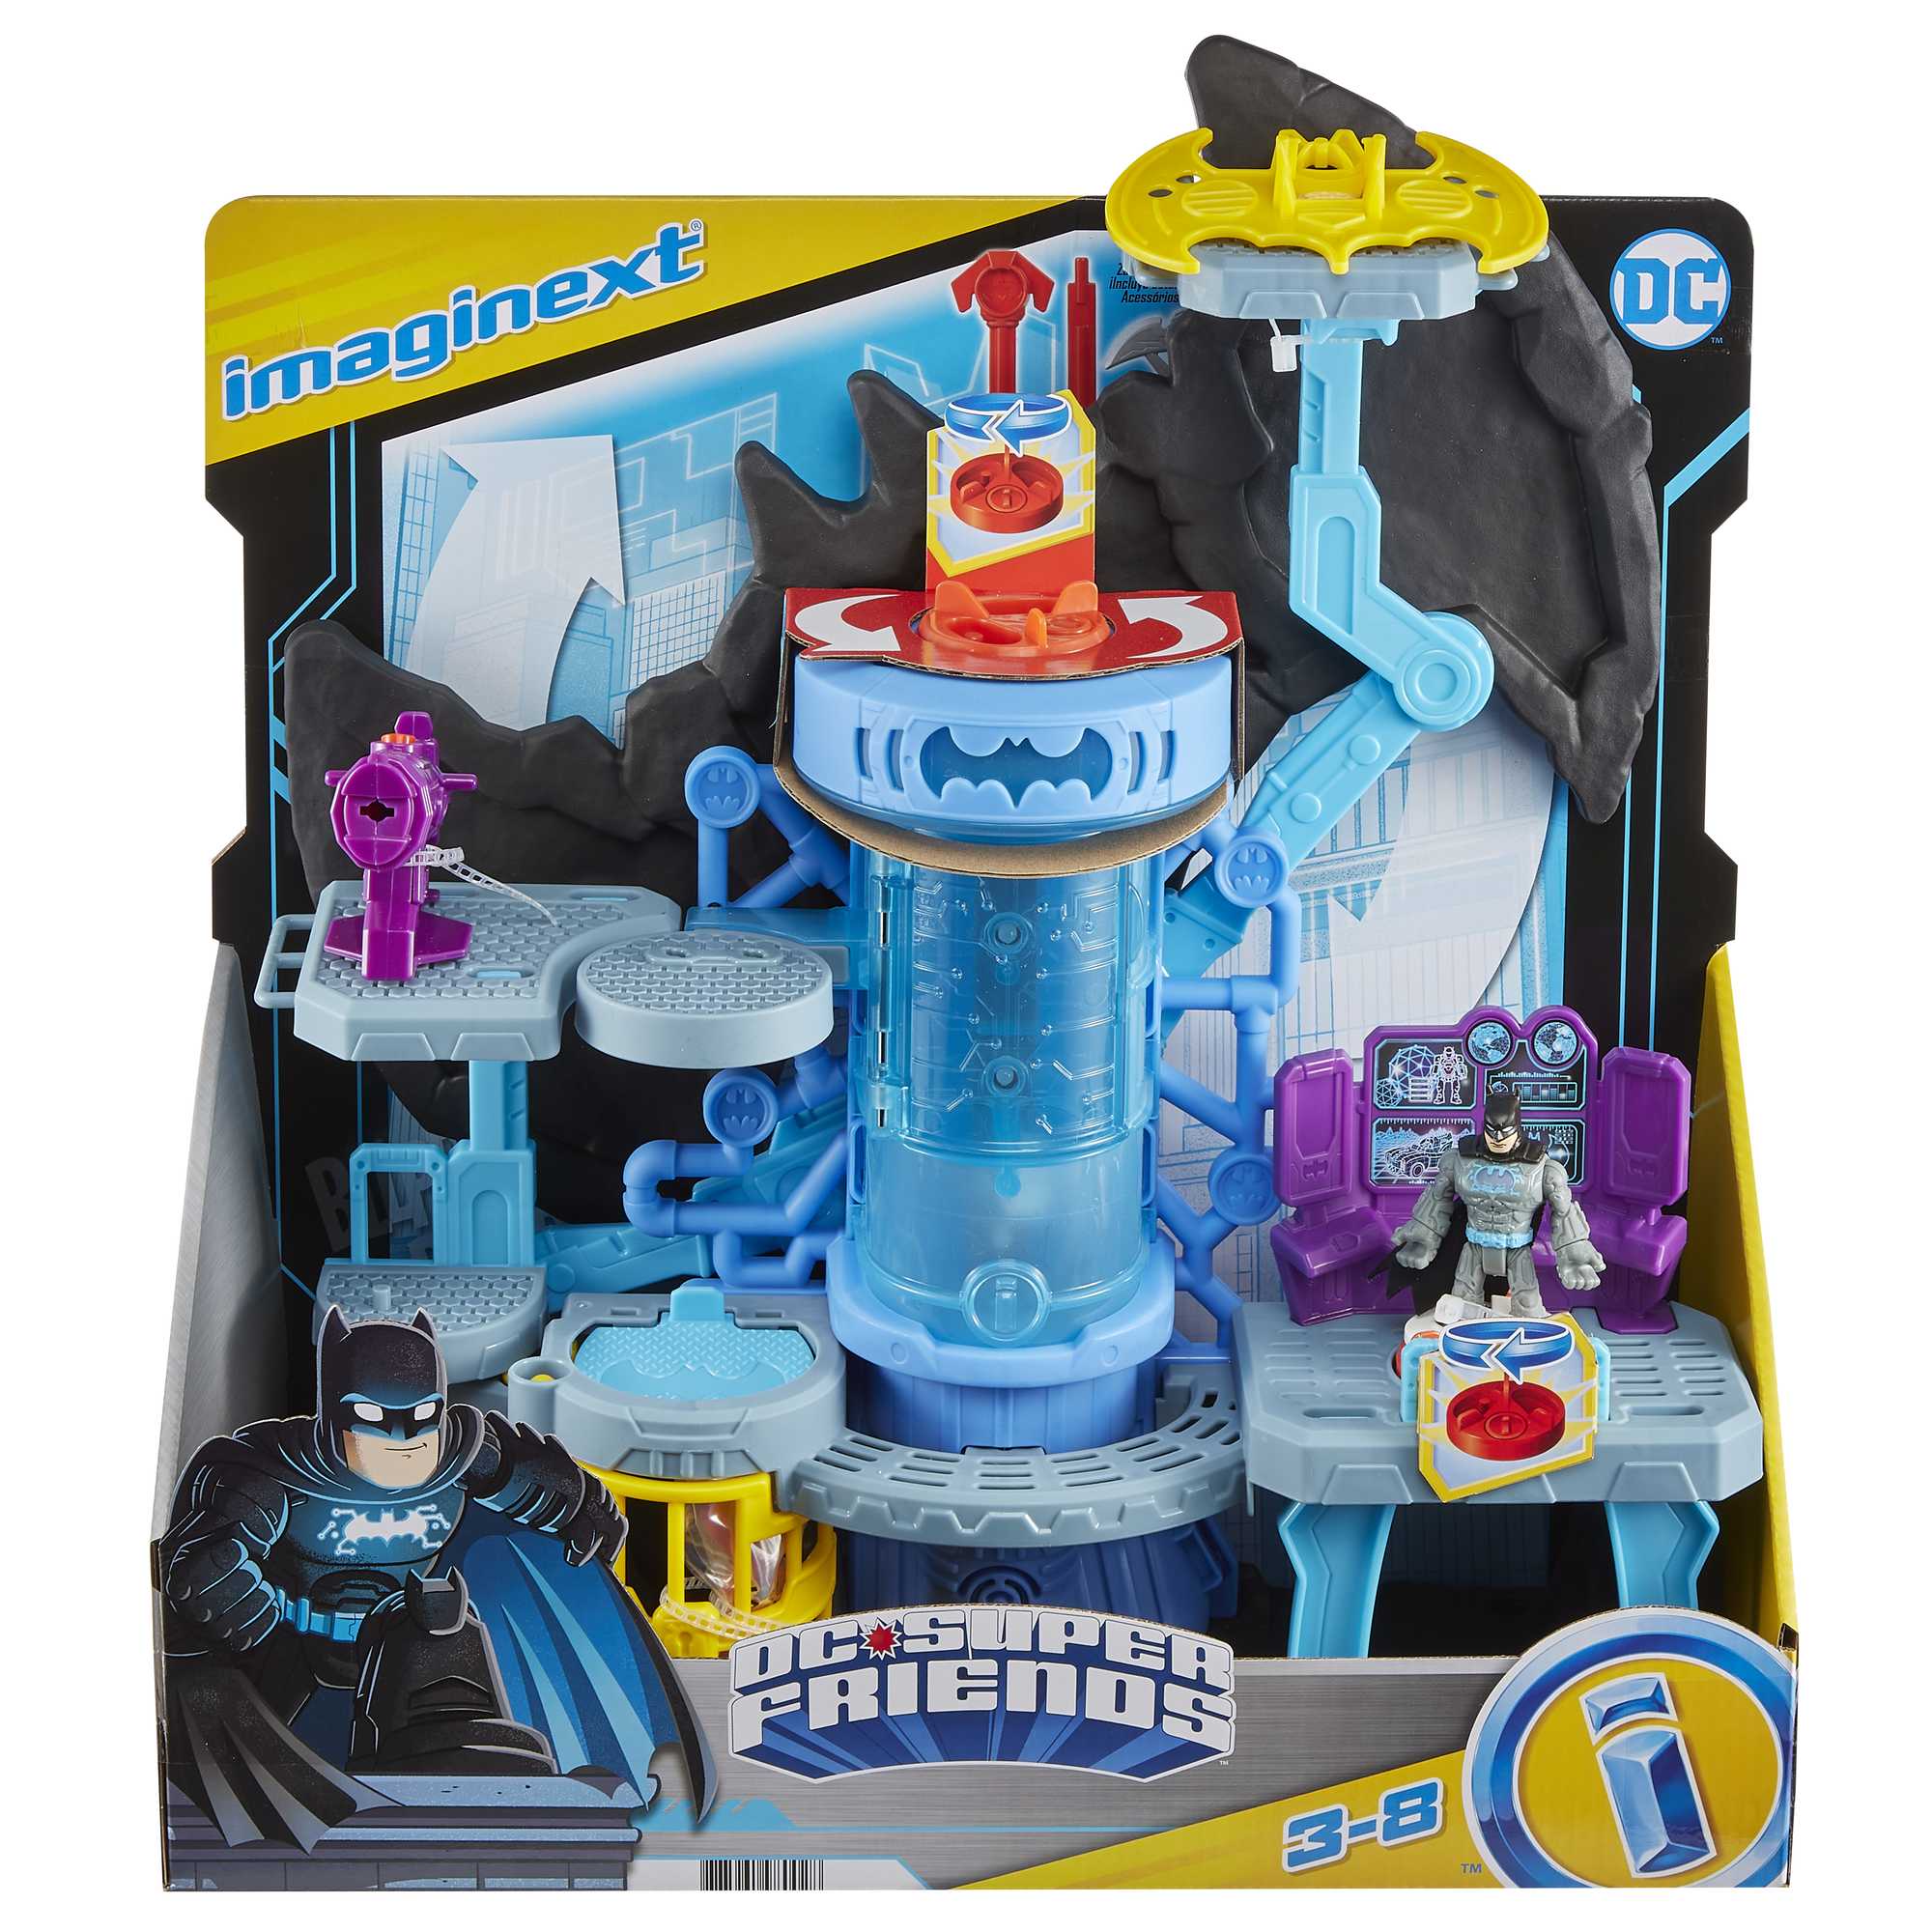  DC Comics Batman - Baticueva Bat-Tech, juego transformador  gigante con exclusiva figura de Batman de 4 pulgadas y accesorios, juguetes  para niños de 4 años en adelante : Todo lo demás